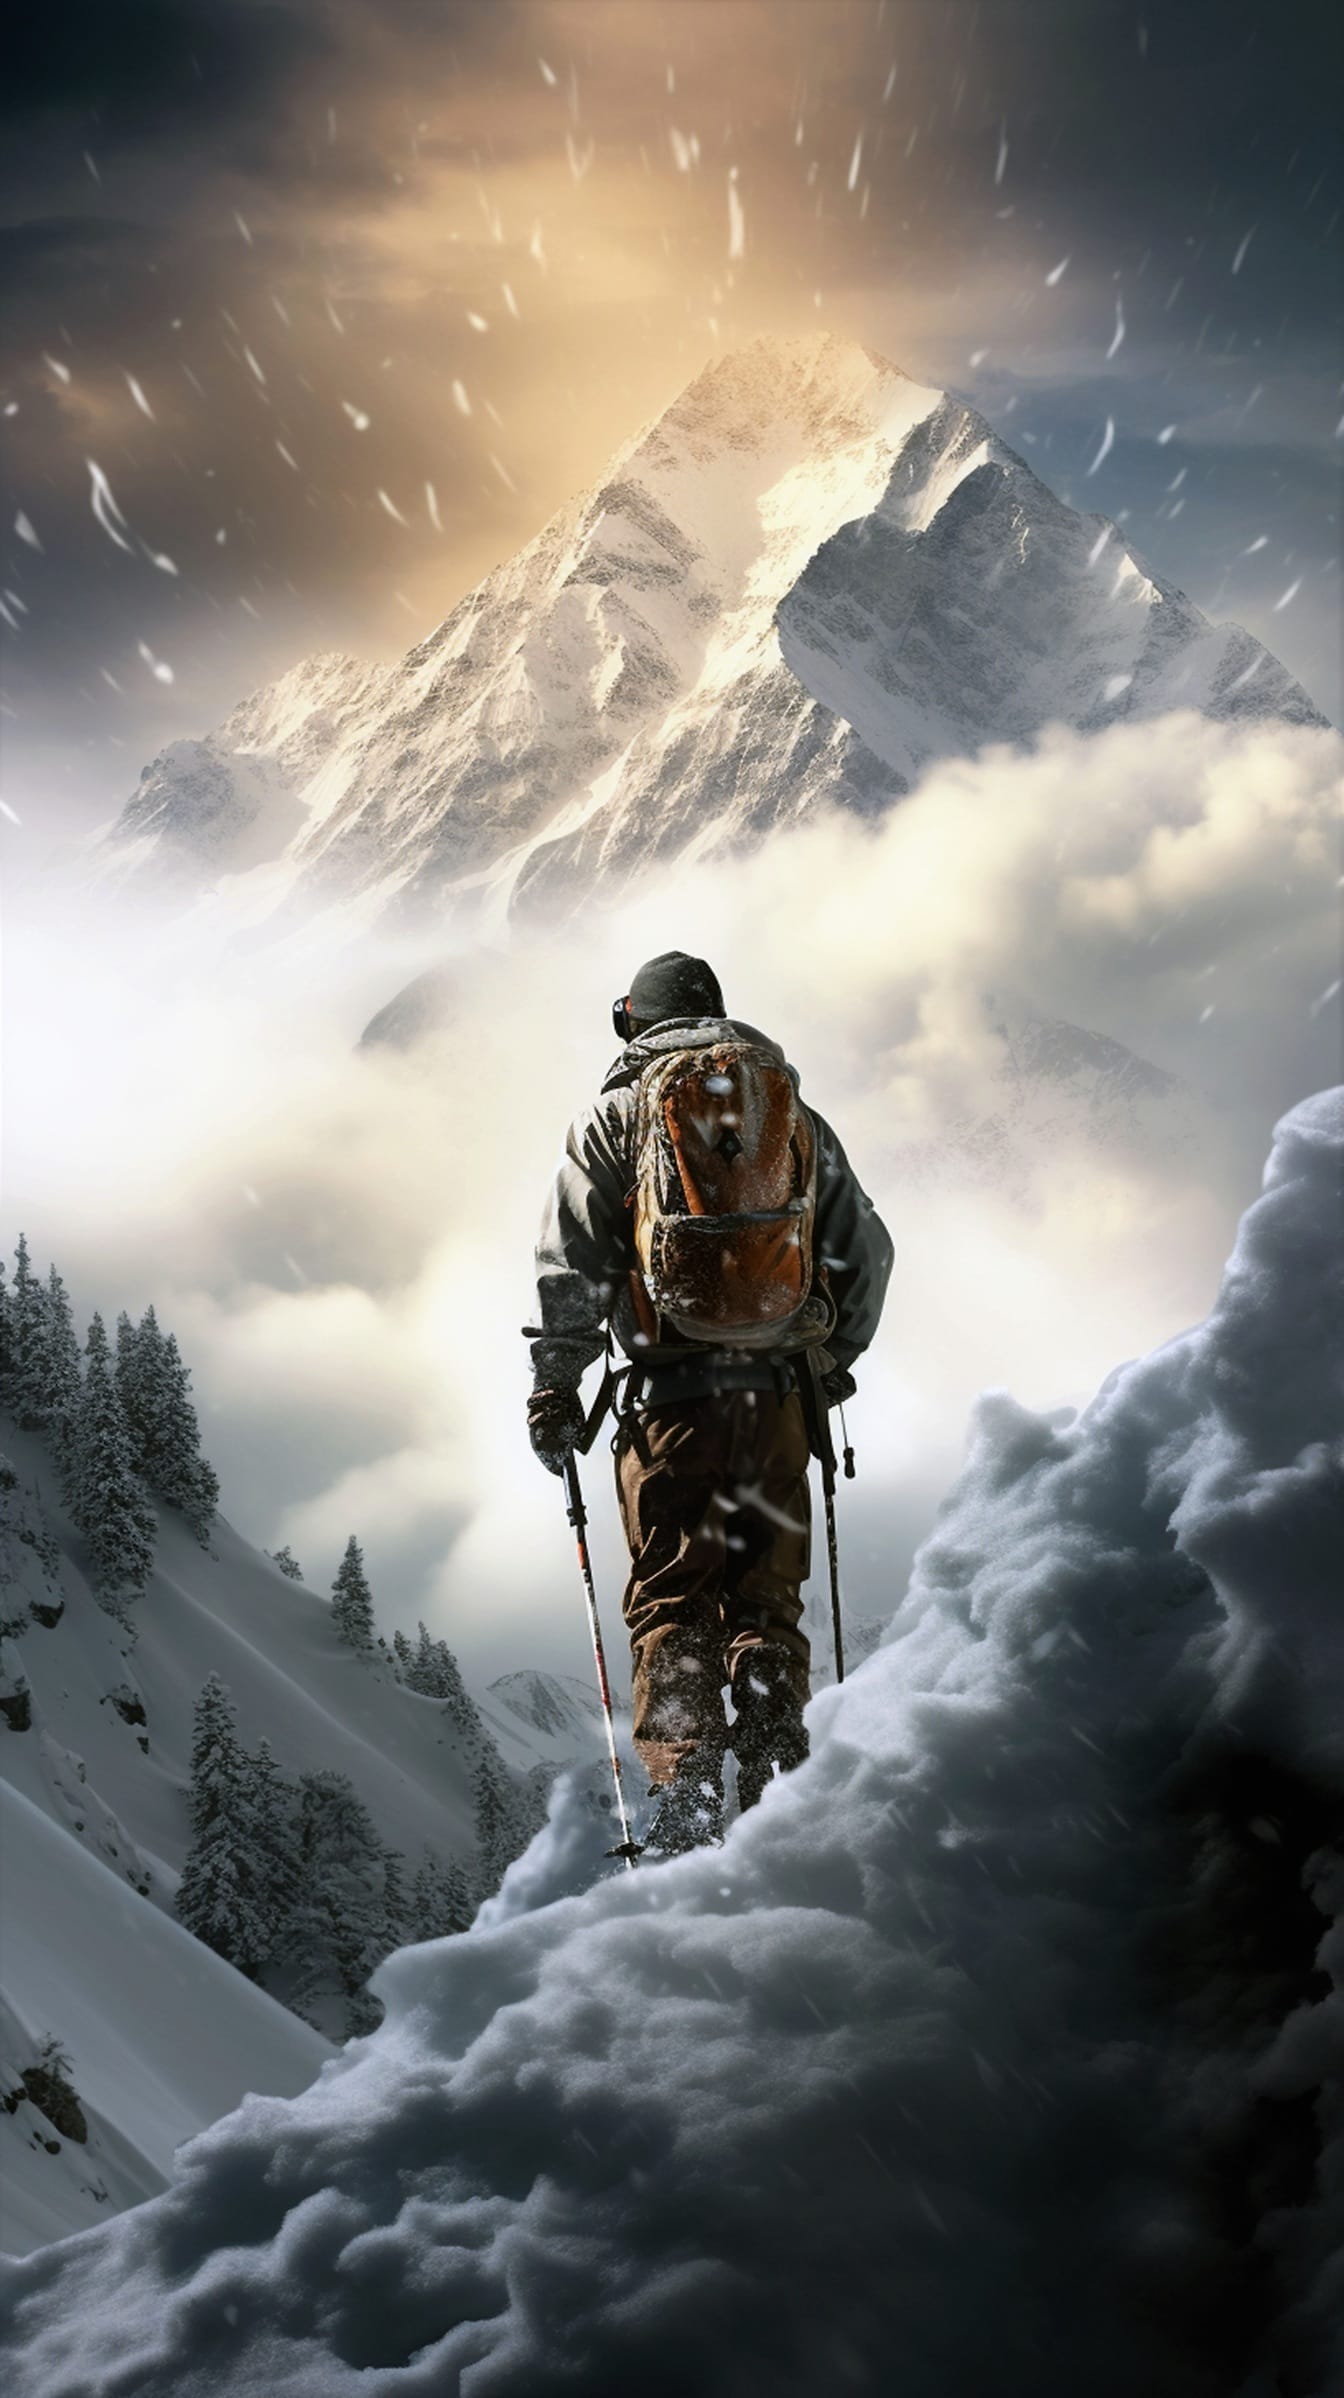 Alpinist backpacker pe vreme cu zăpadă extremă